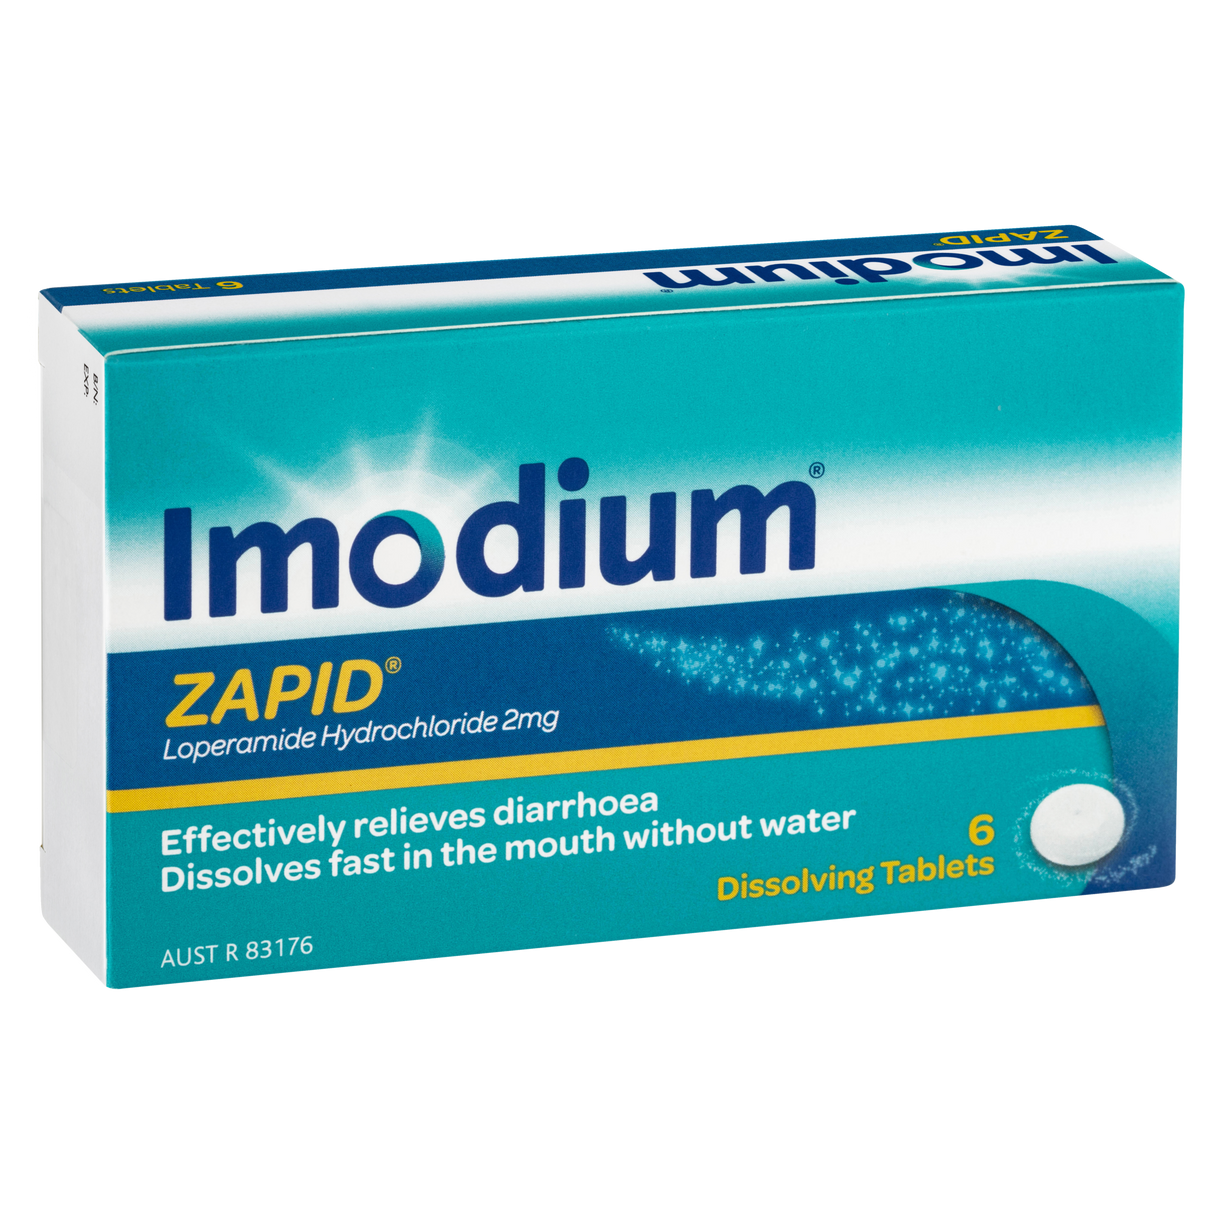 Imodium Zapid Diarrhoea Treatment Dissolving Tablets 6 Pack